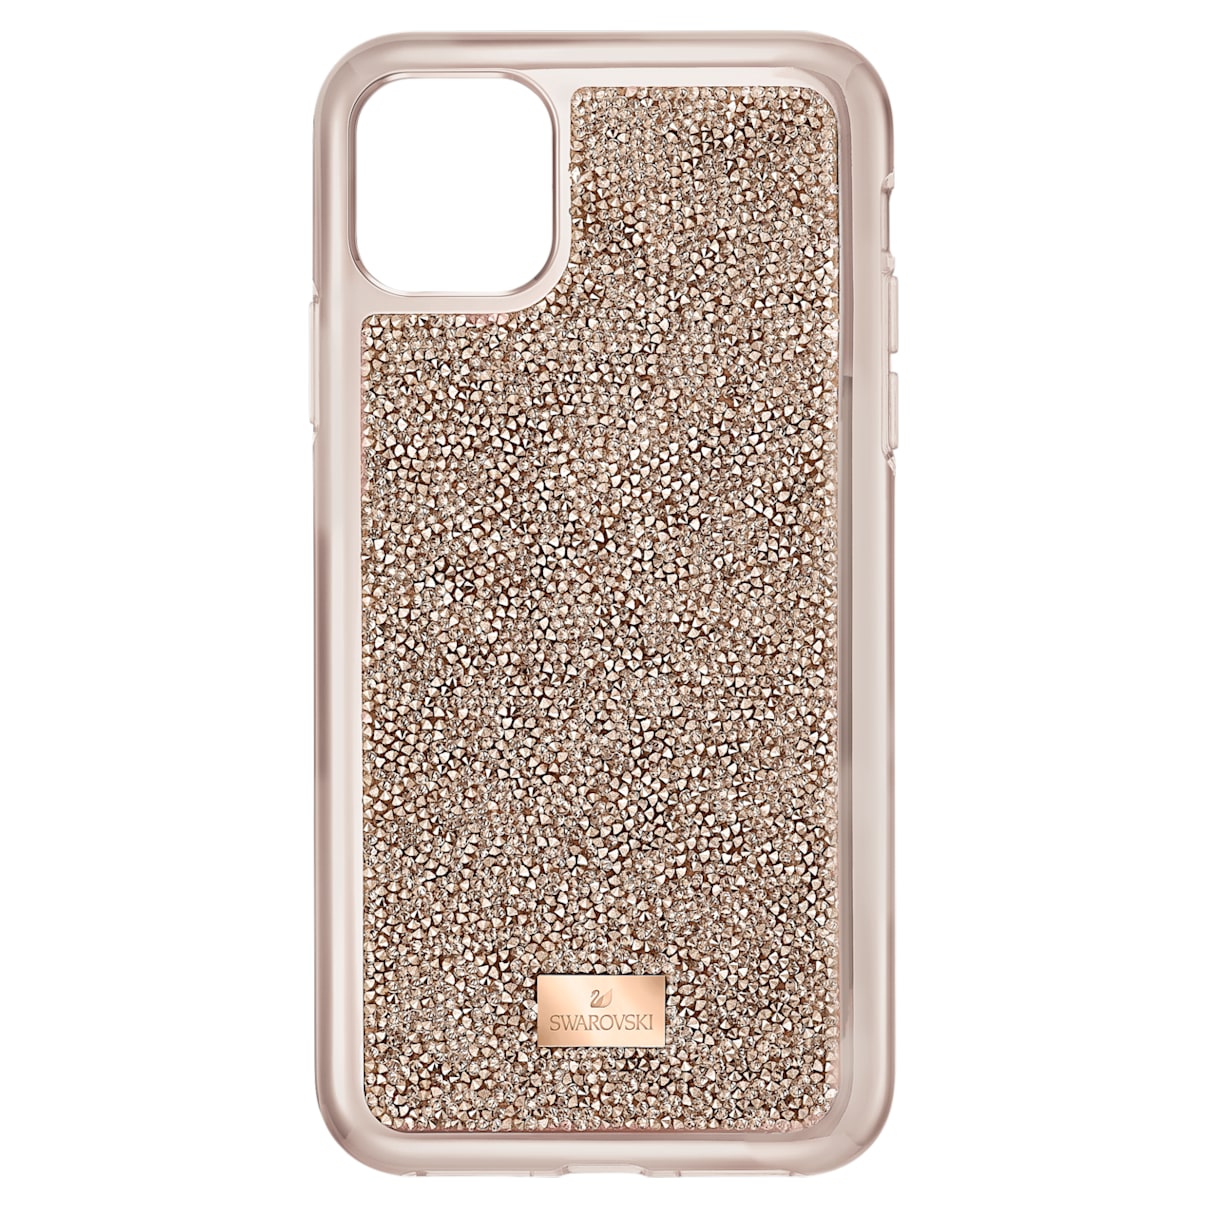 Custodia per smartphone con bordi protettivi Glam Rock, iPhone® 11 Pro Max, tono oro rosa